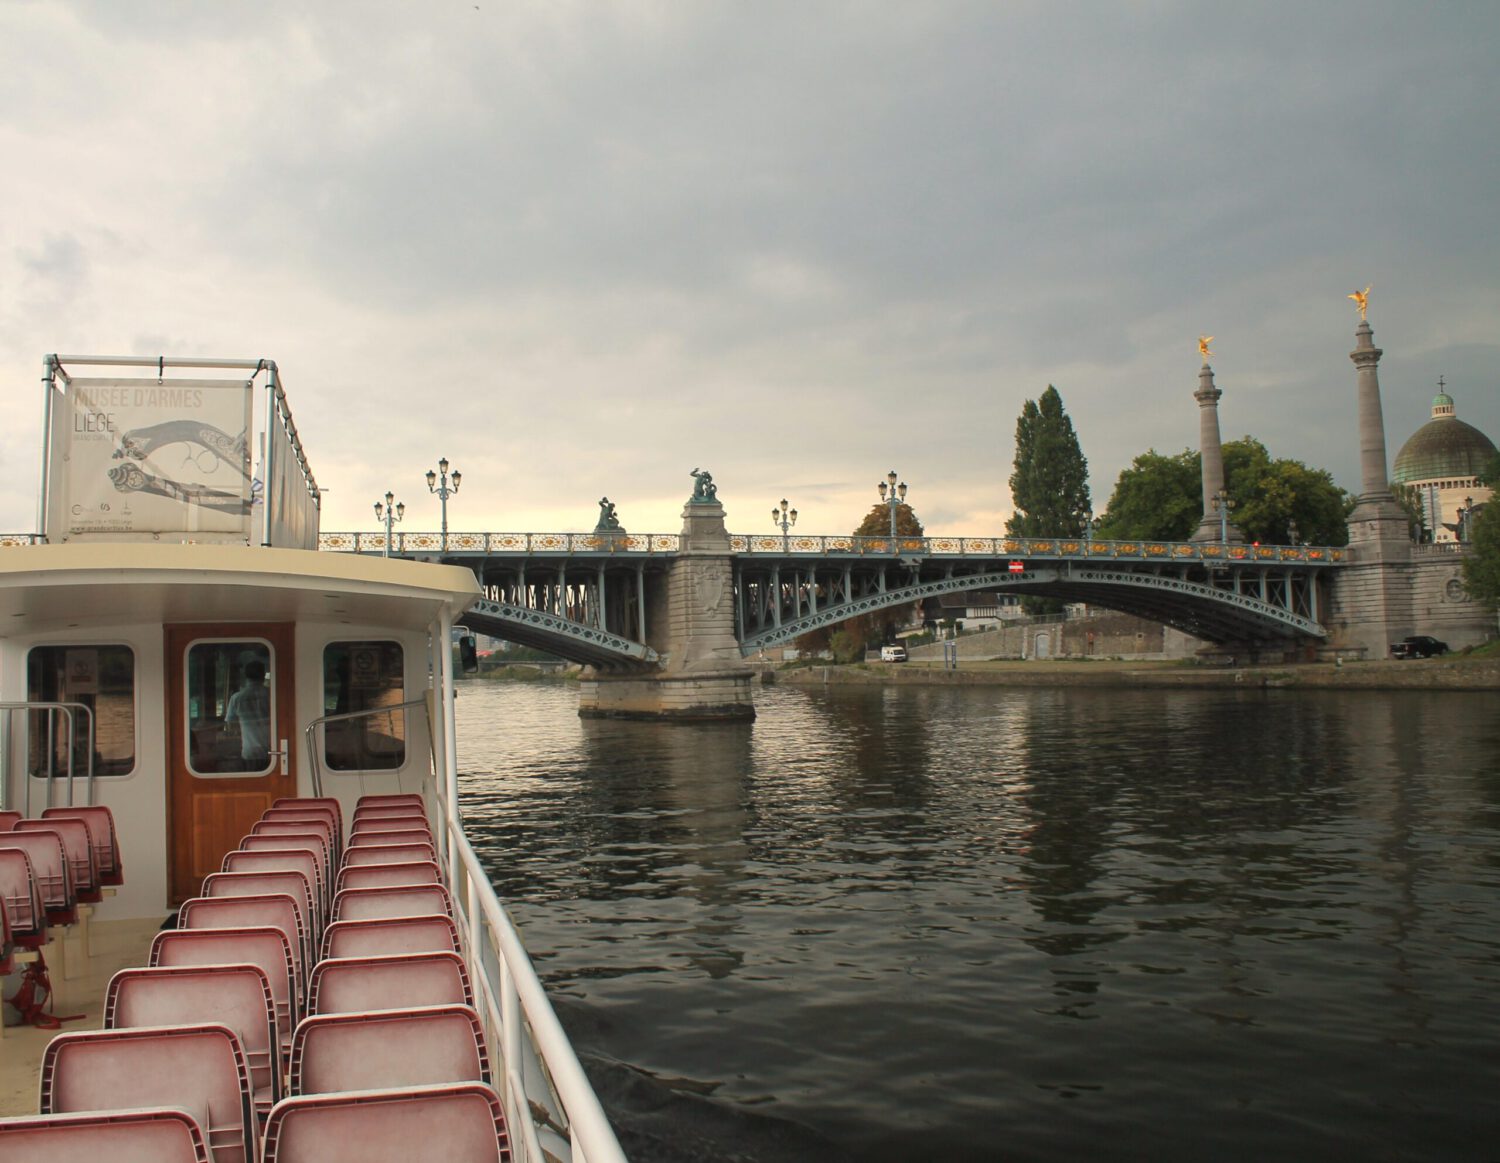 Liege: Bootsfahrt auf der Maas. Offenes Boot auf der Maas vor der Engelsbrücke in Lüttich. Boot is menschenleer. Bewölkter Himmel.